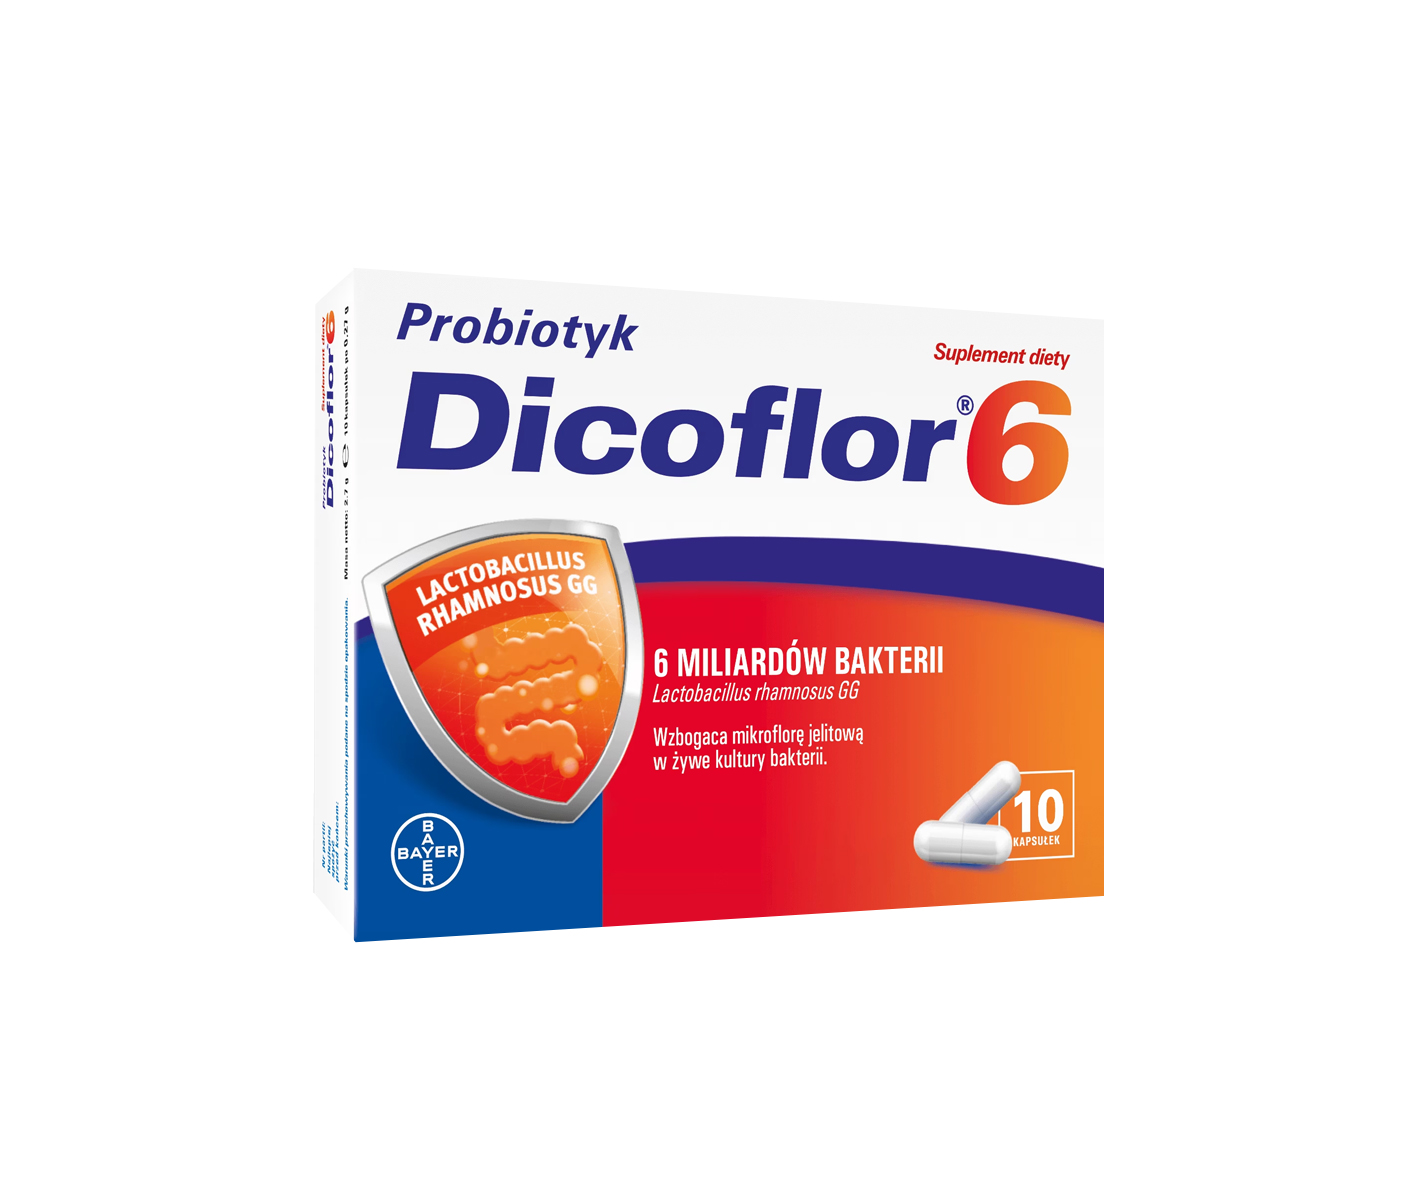 Dikoflor 6, probiotikum